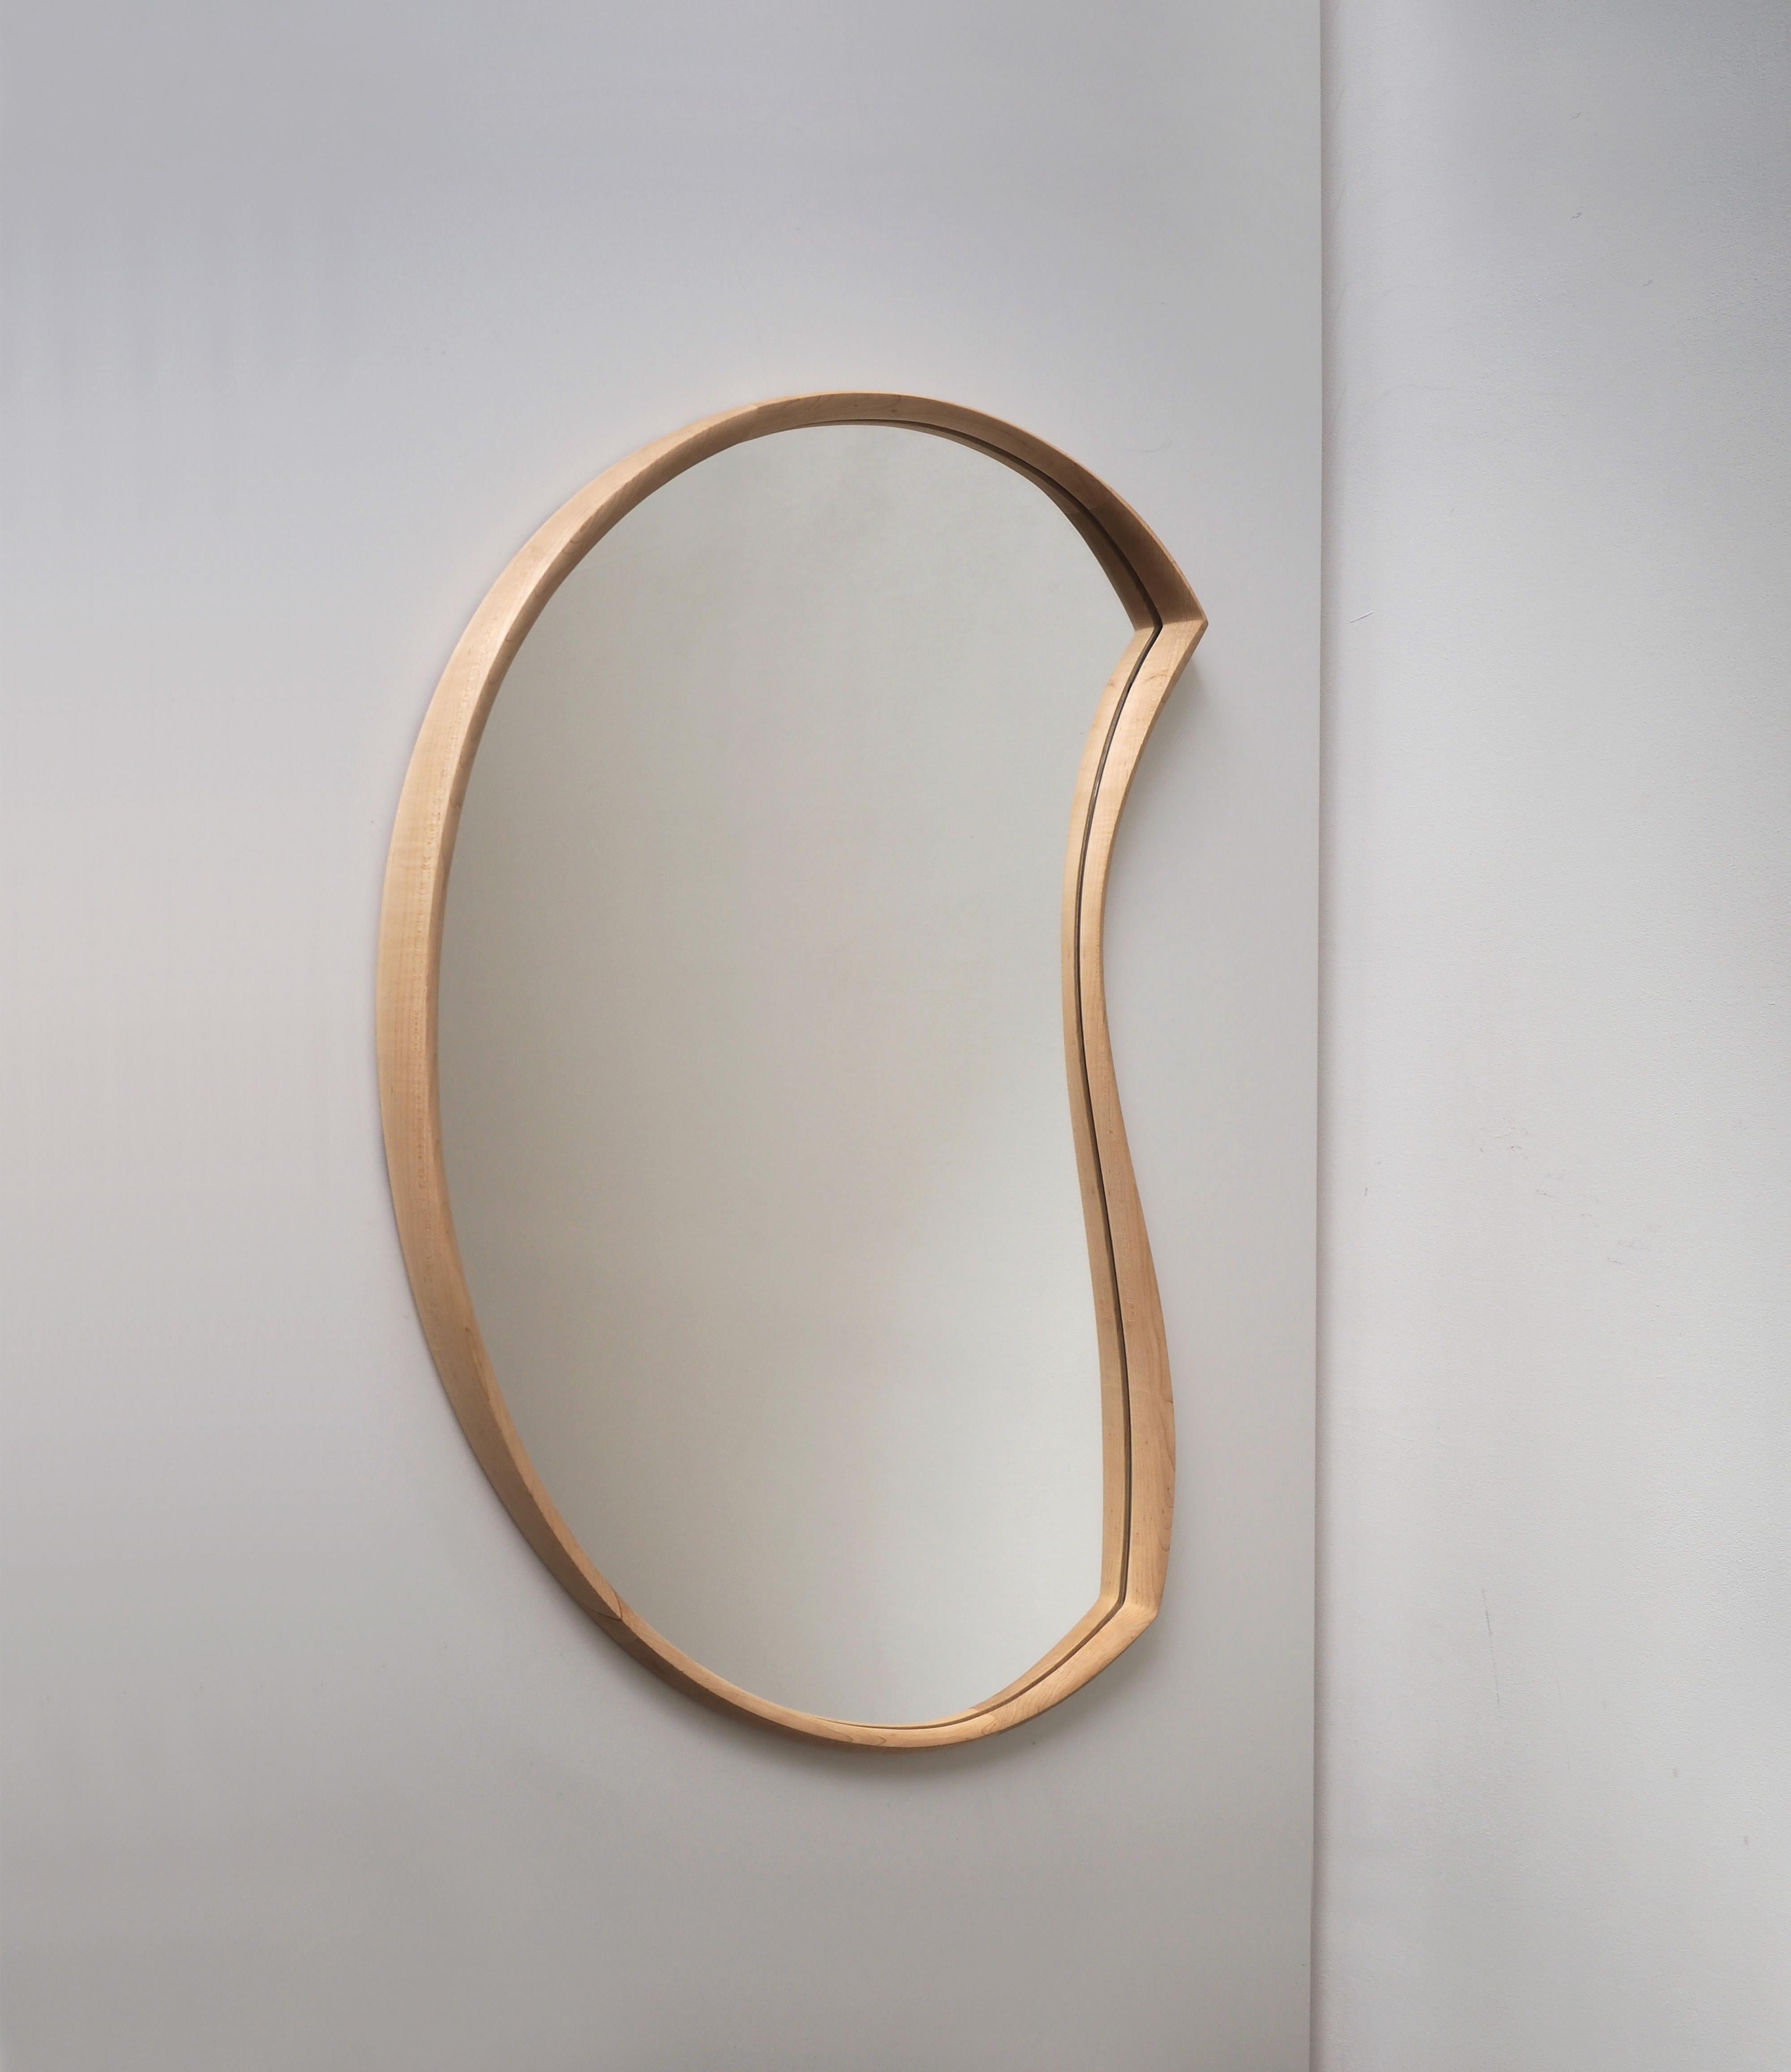 Hardwood Asymmetric Wood Mirror, Organic Moon Wall Mirror (Medium) by Soo Joo  For Sale